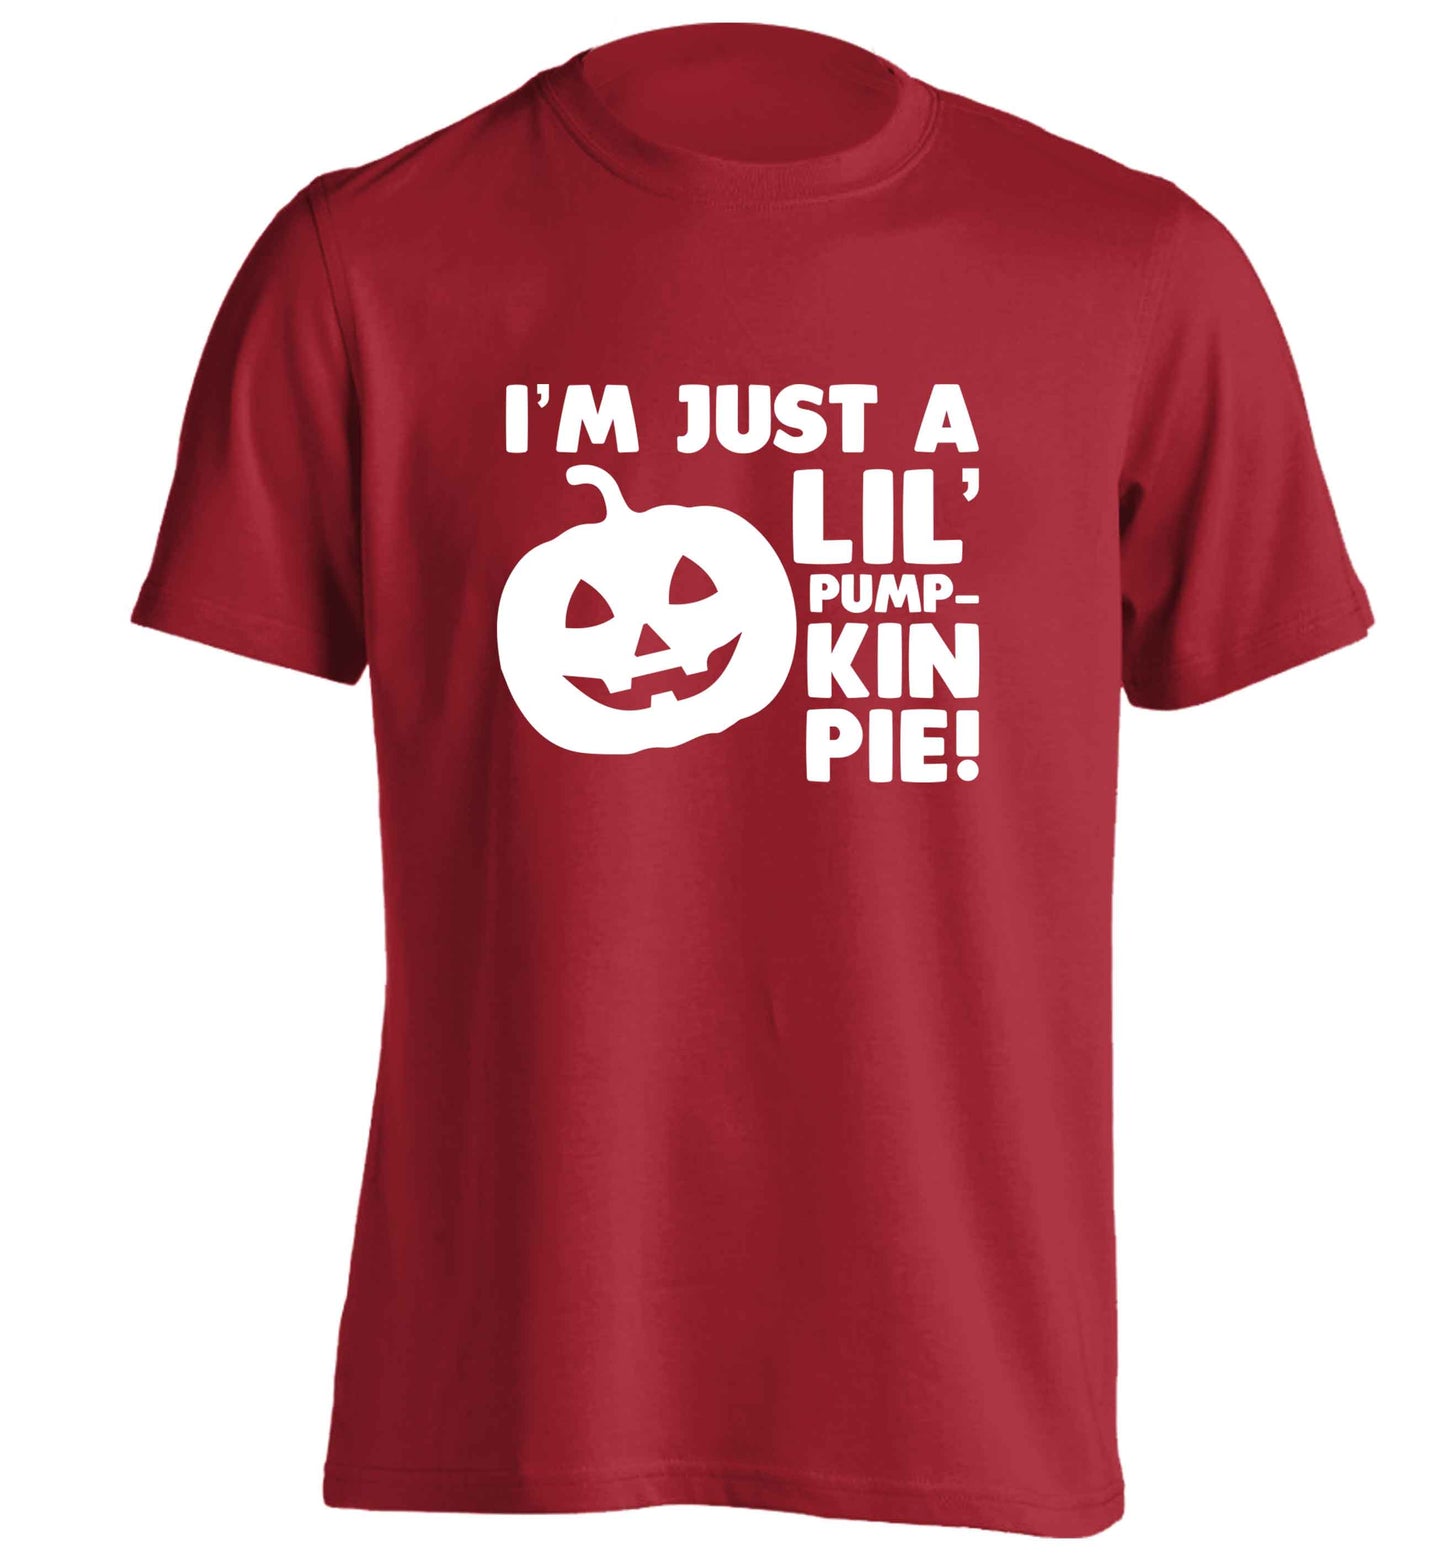 I'm just a lil' pumpkin pie adults unisex red Tshirt 2XL